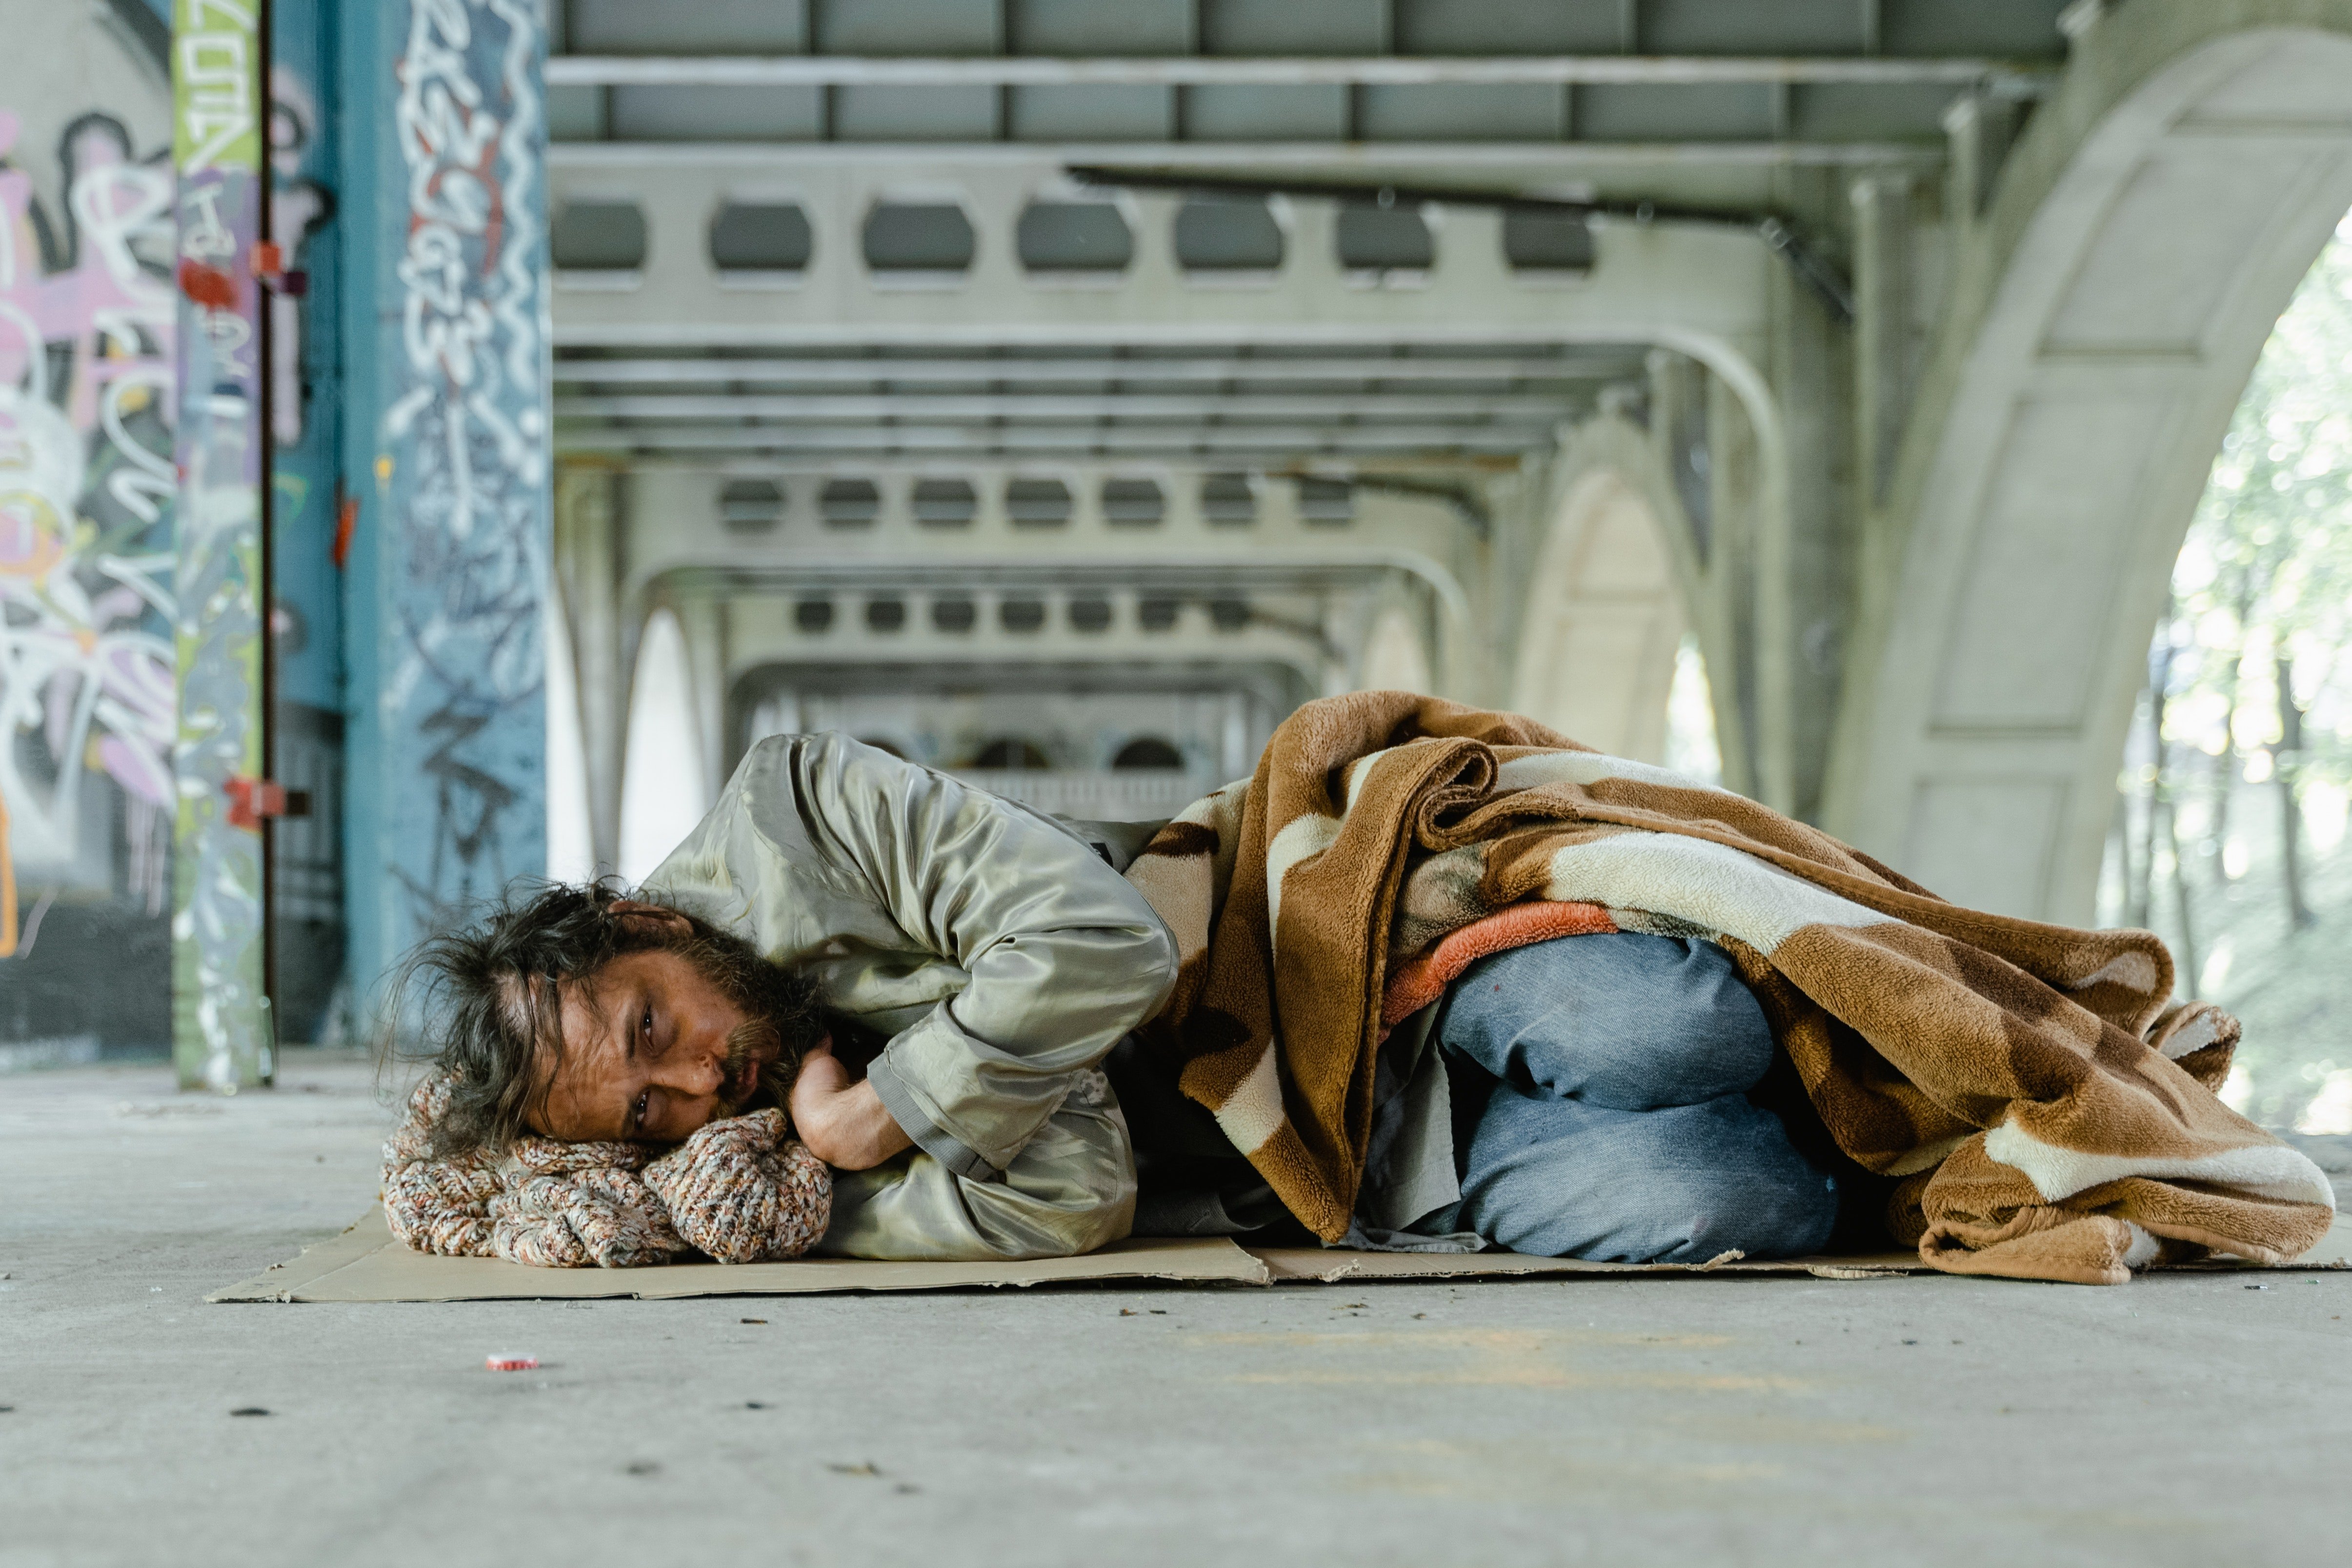 Der Obdachlose dankte Kevin für die Rettung | Quelle: Pexels